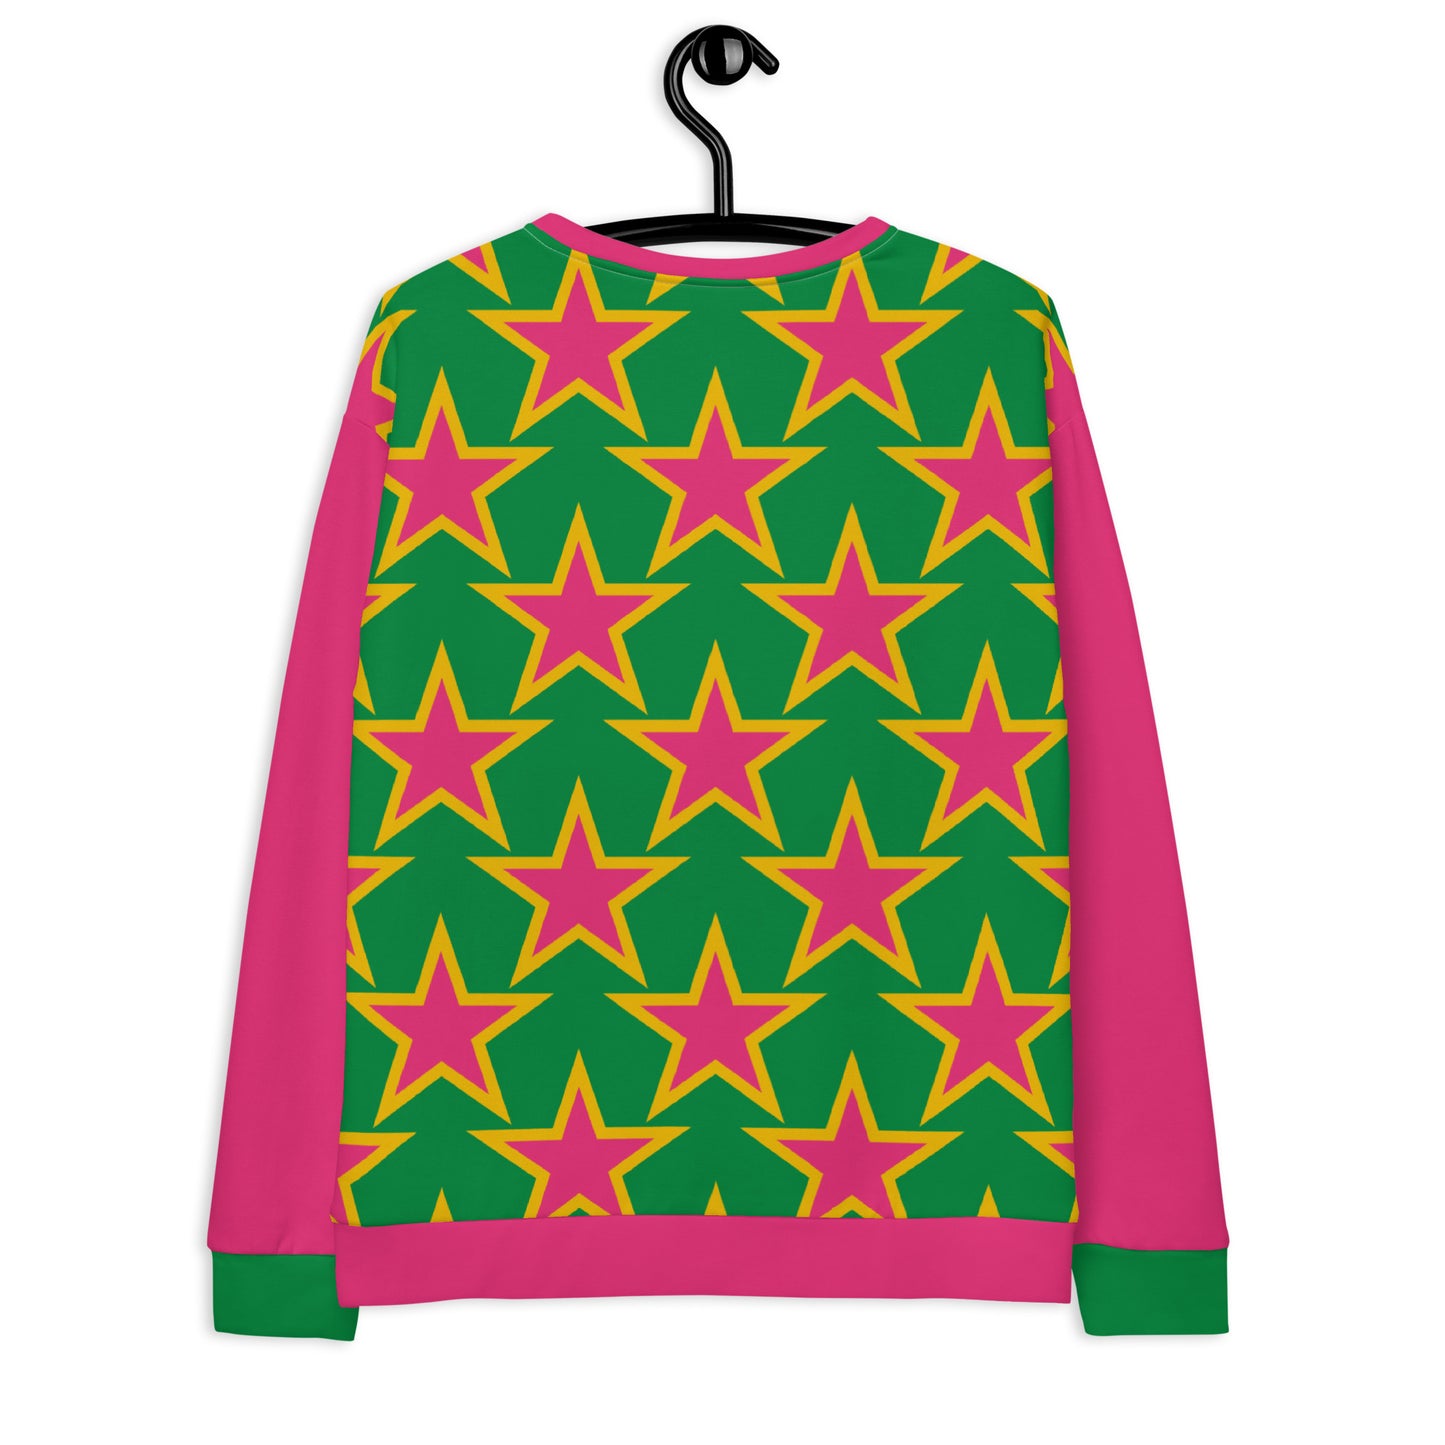 ELLIE STAR green - Unisex Sweatshirt